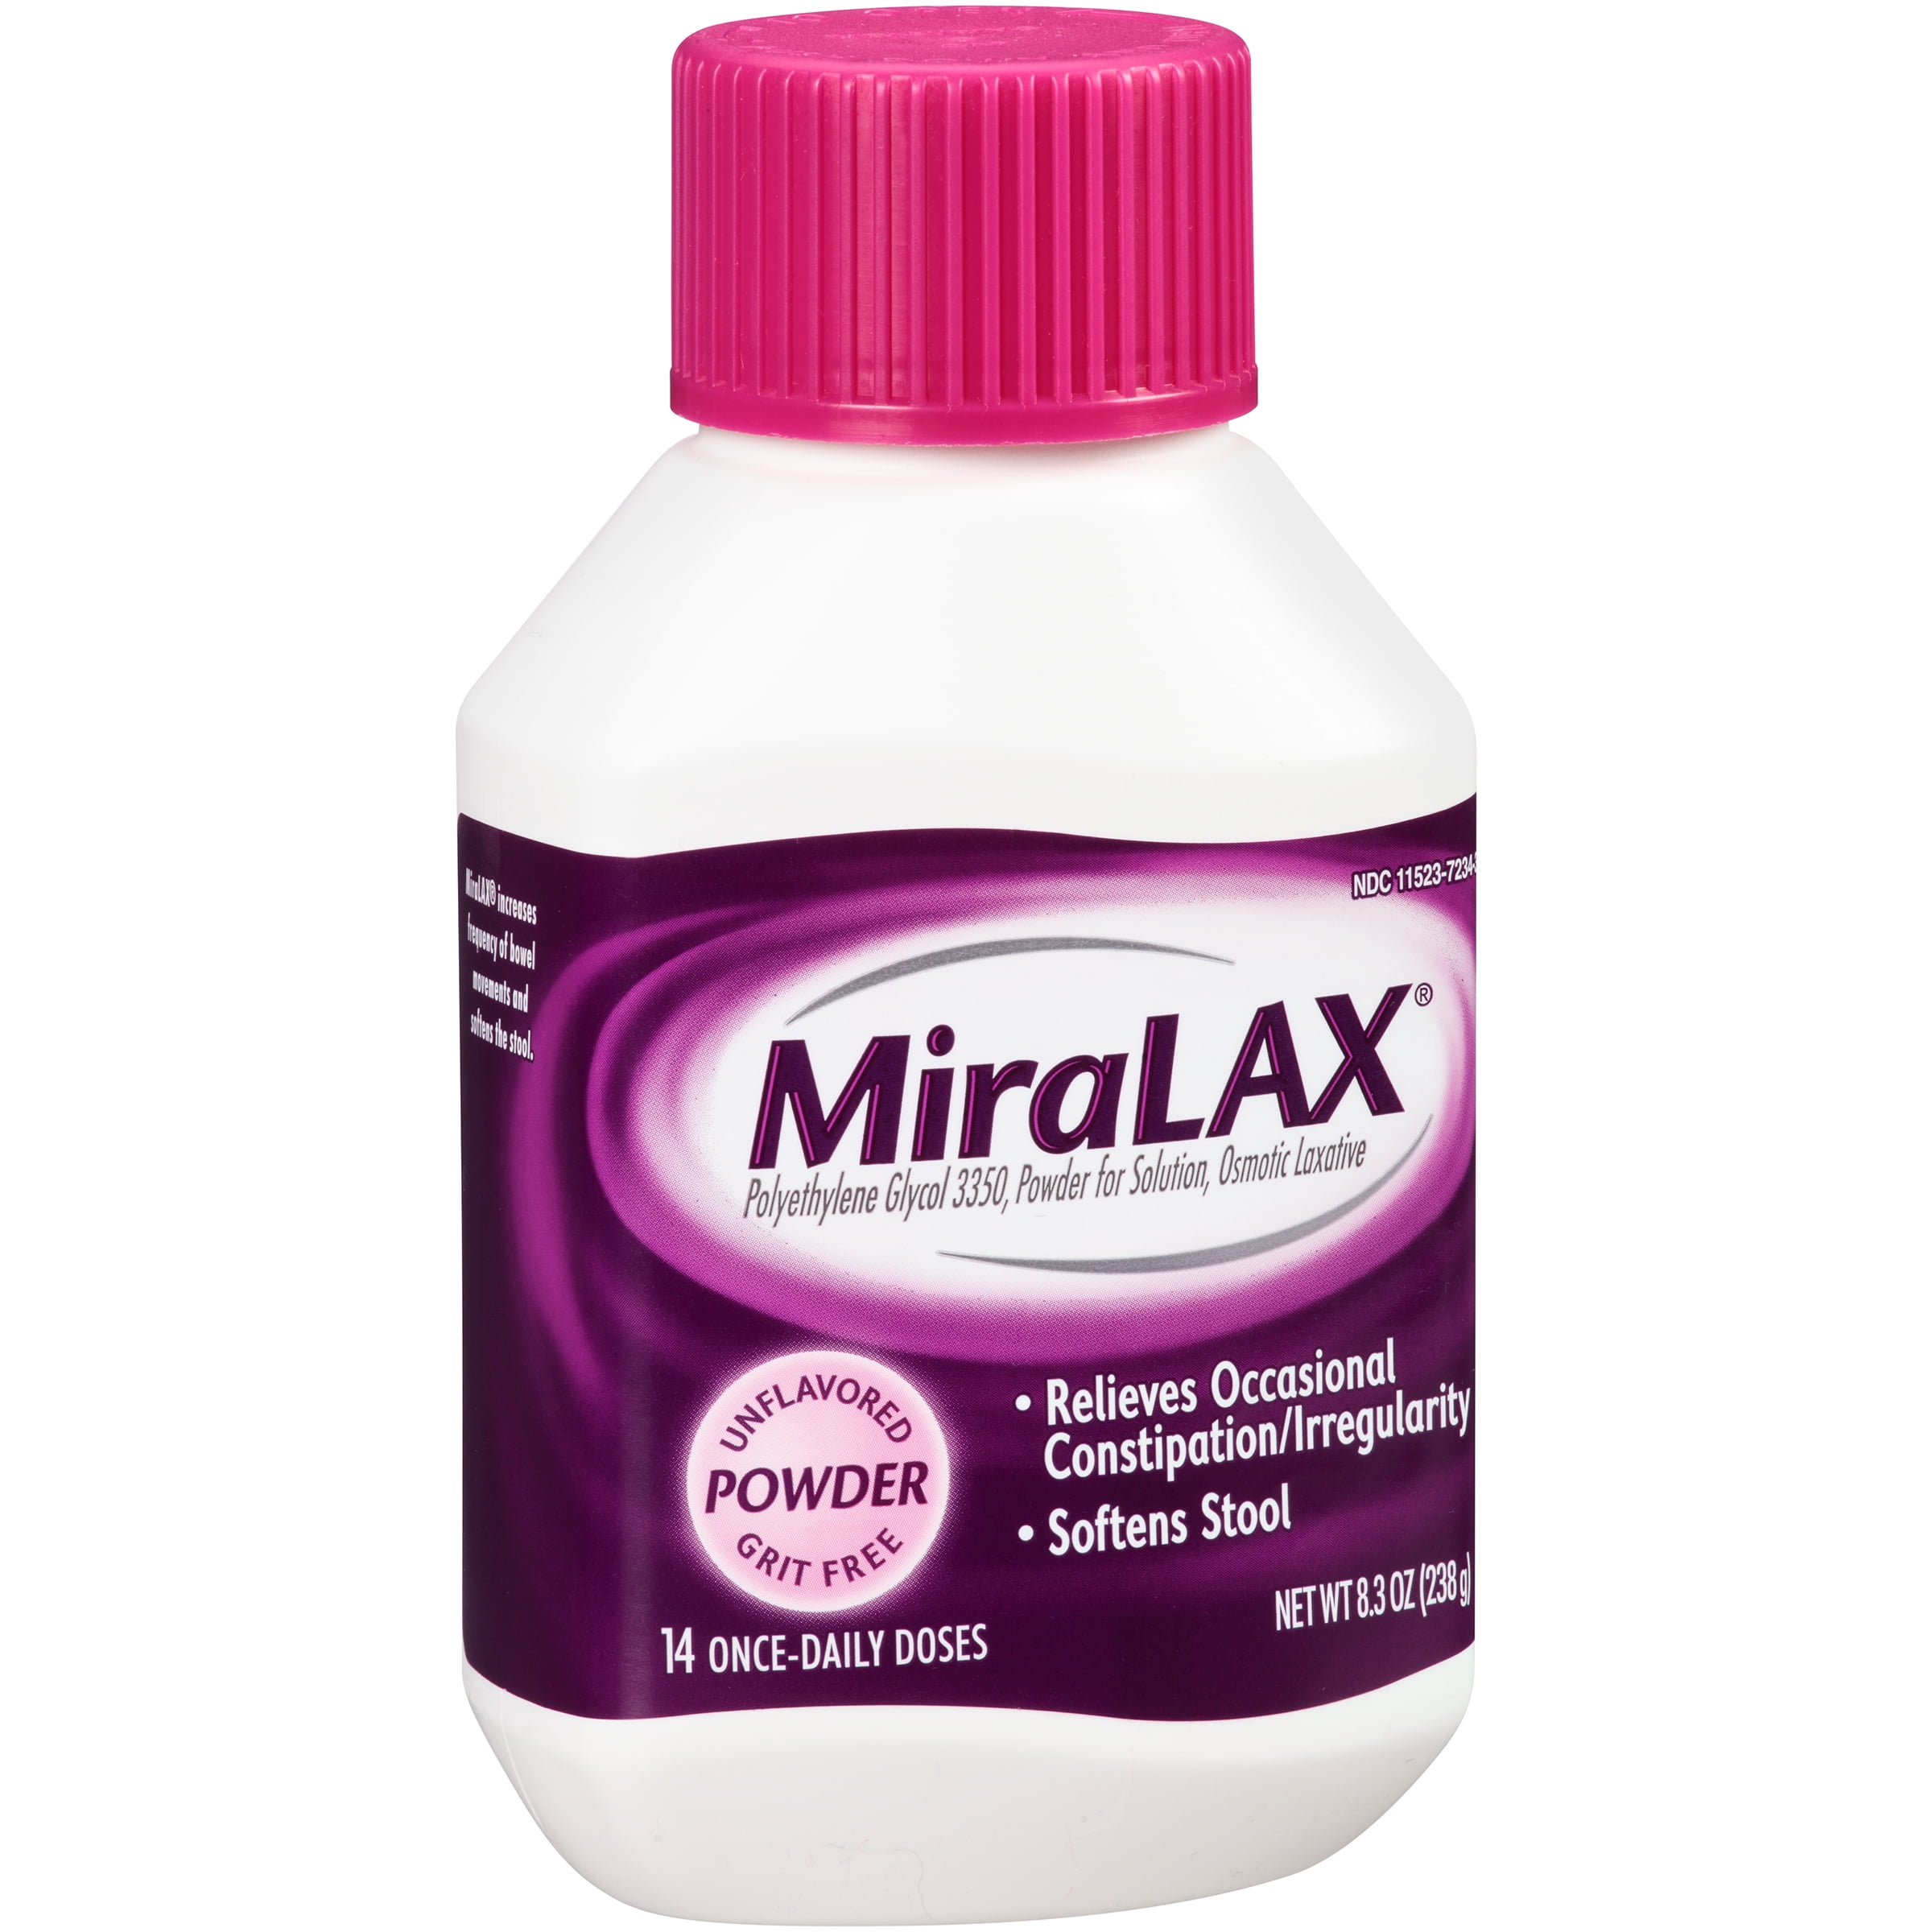 miralax-bottle-sizes-best-pictures-and-decription-forwardset-com